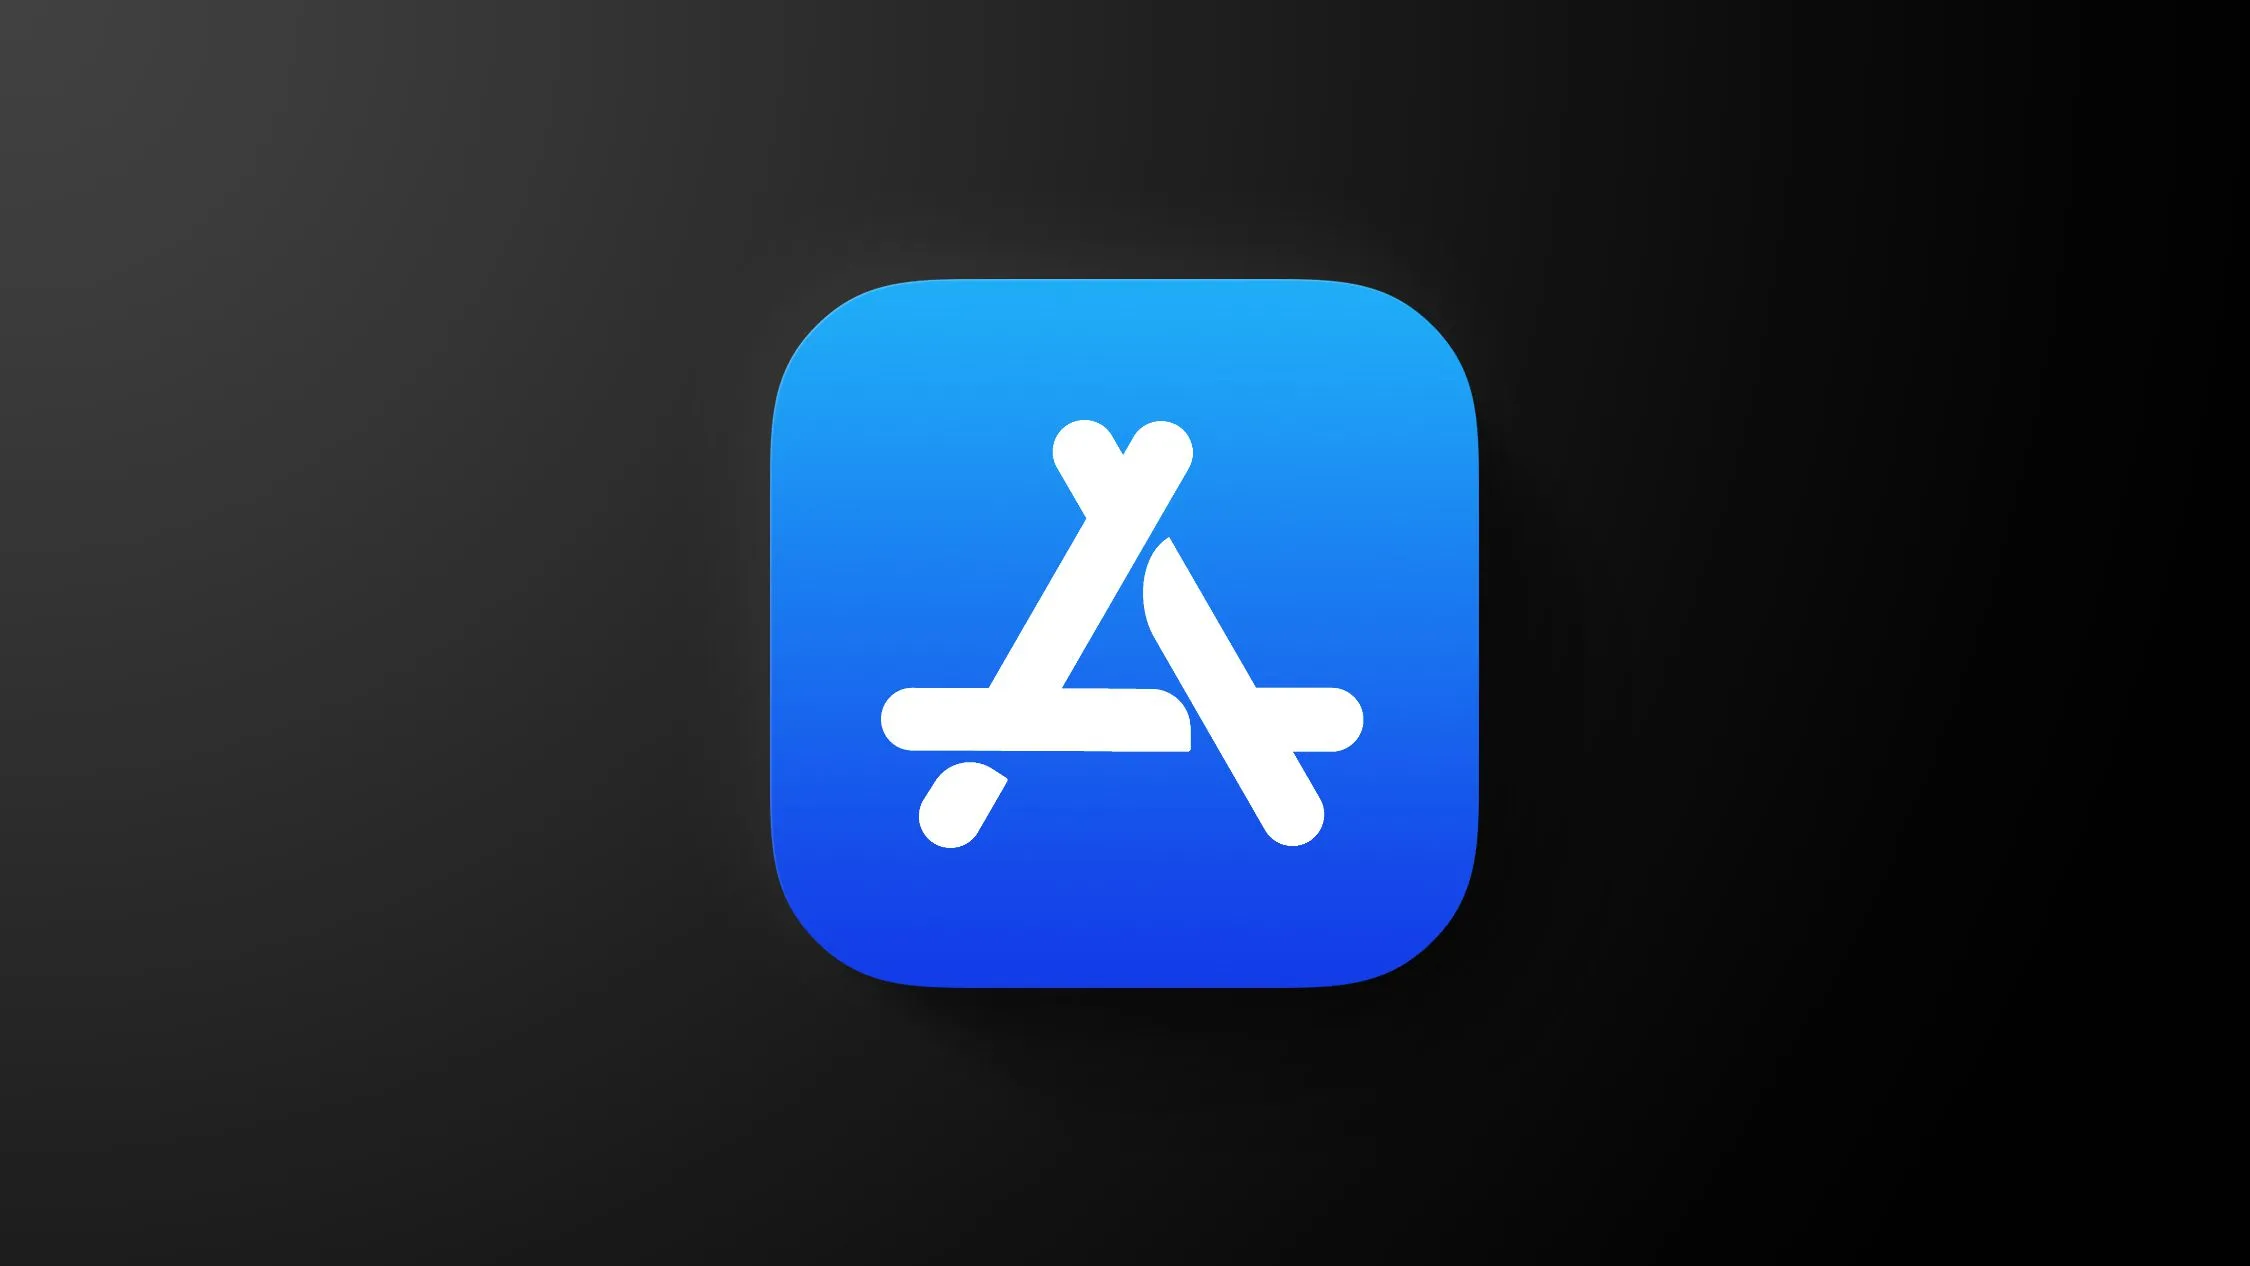 Tổng hợp thay đổi trong iOS 17.4 Beta: Cho phép cài app từ cửa hàng ngoài, emoji mới, thêm phương thức thanh toán khác